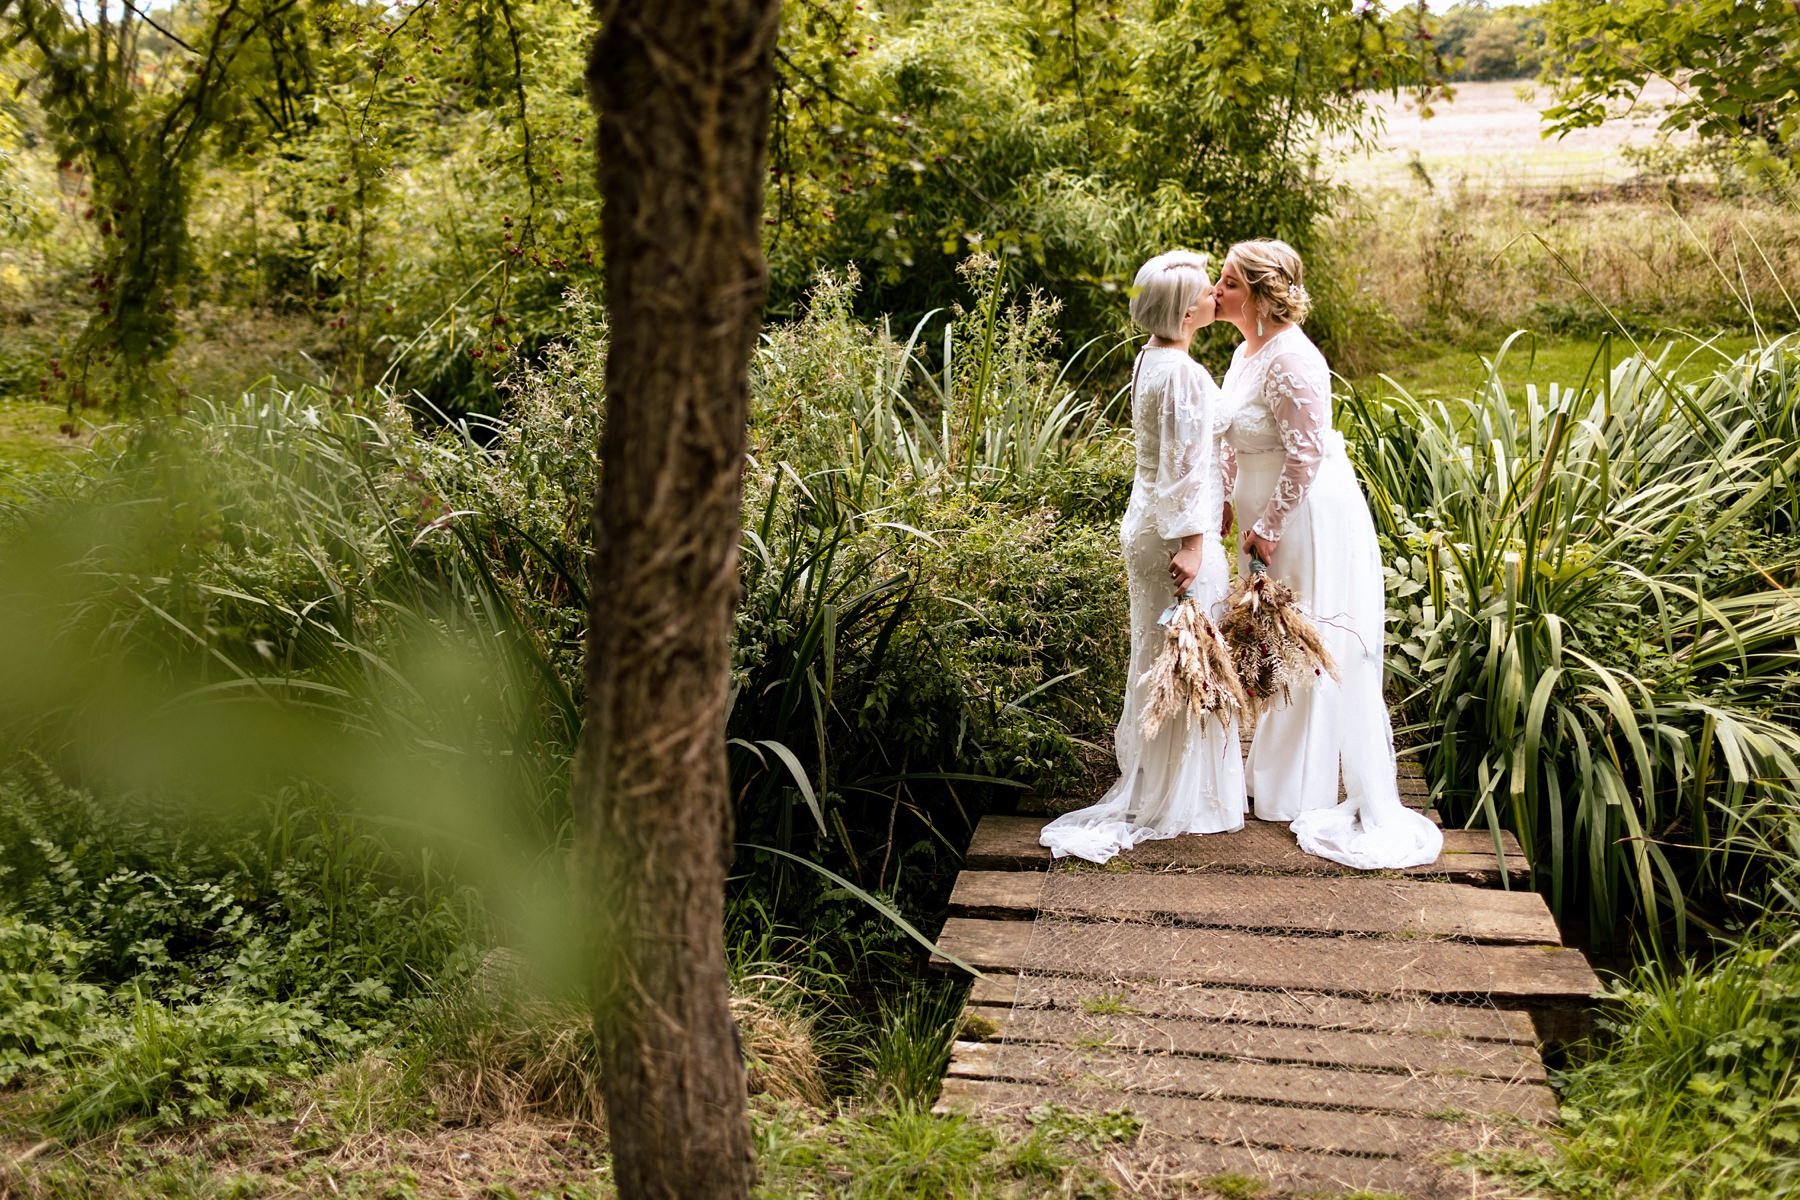 evenley-wood-garden-wedding-in-the-woods_0033.jpg